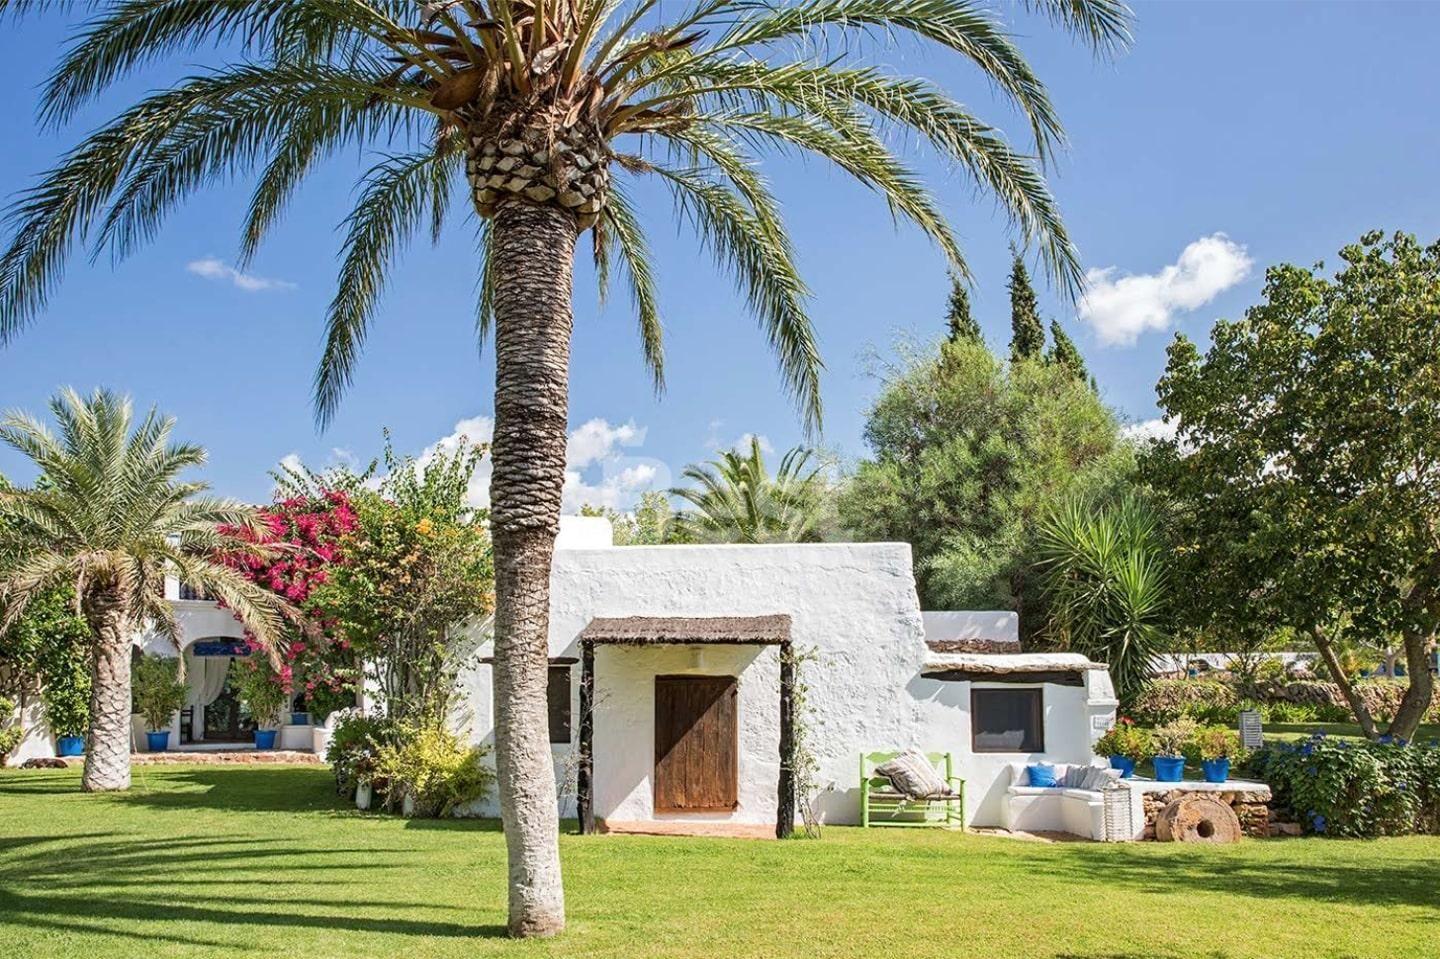 Casa tradicional de Ibiza en venta en la zona de San Rafael - Ibiza. Country house for purchase